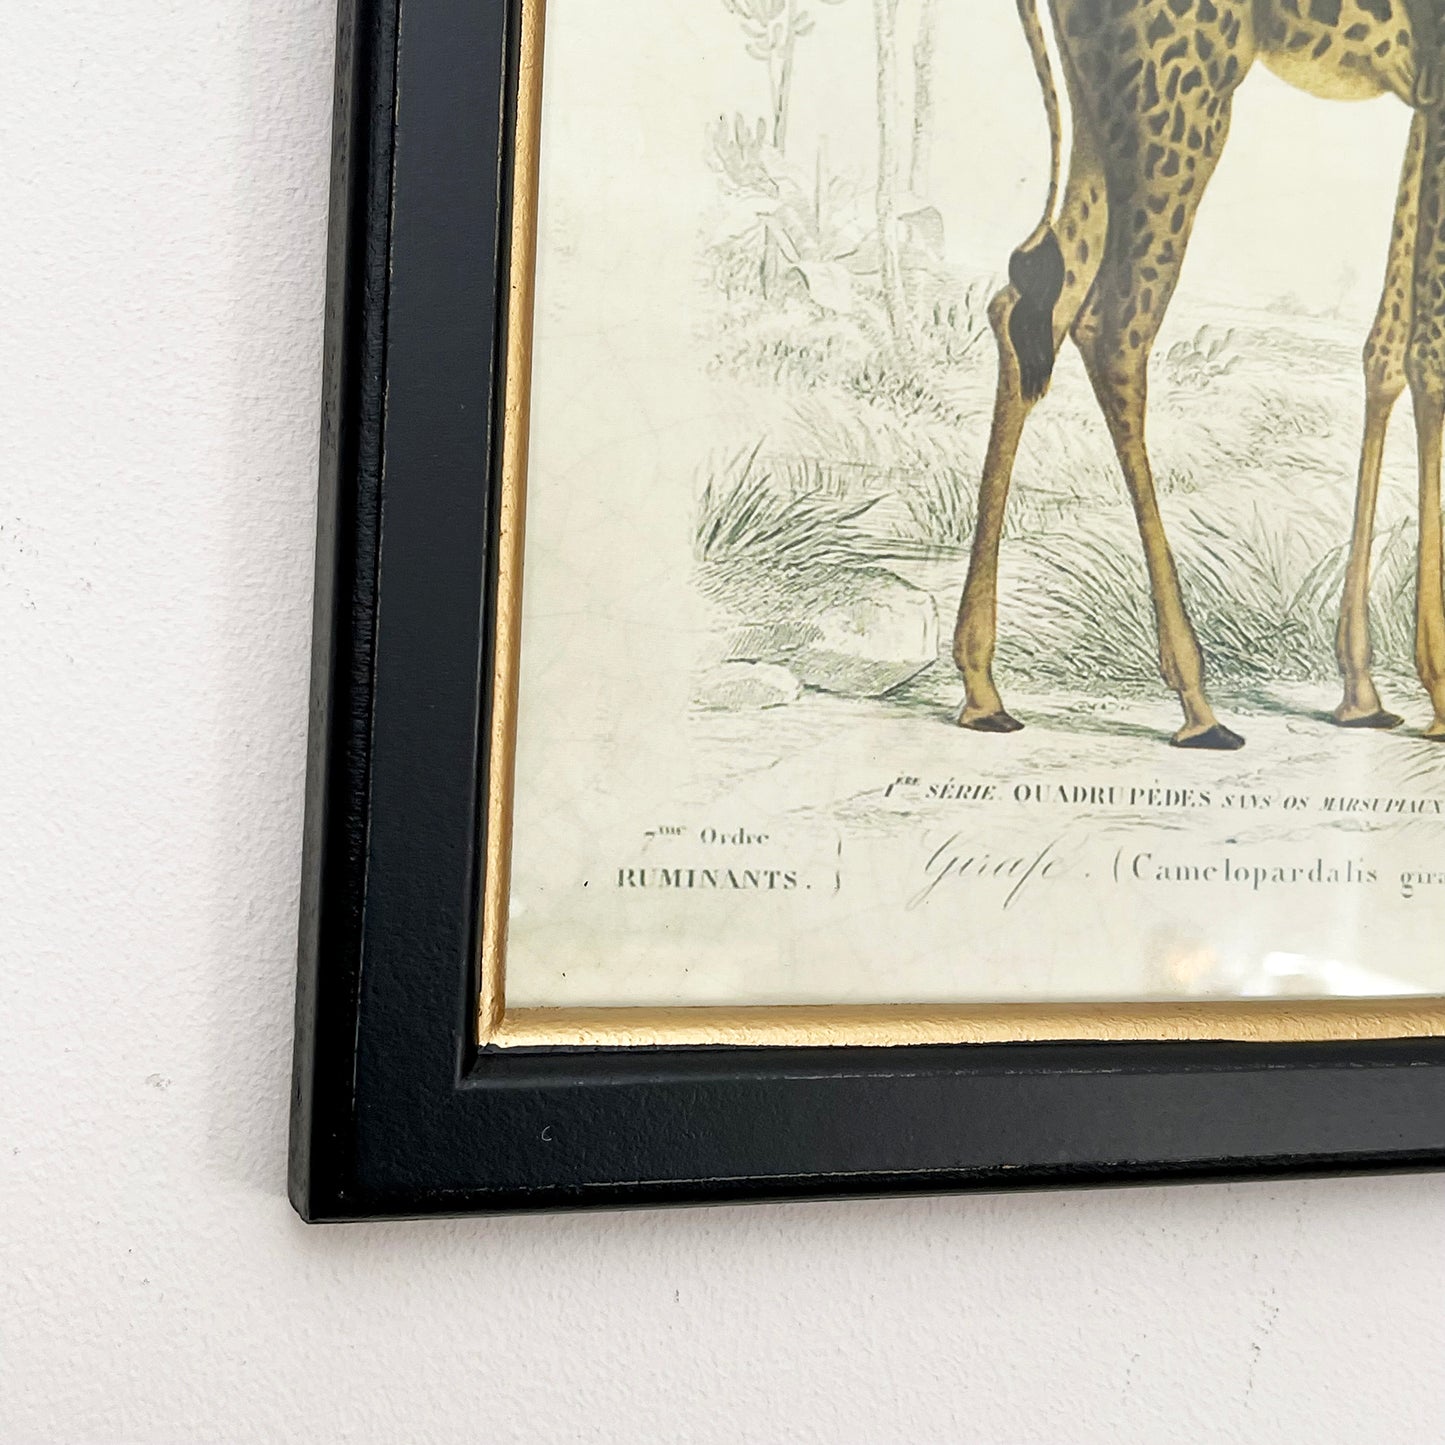 Vintage Giraffe Framed Wall Art